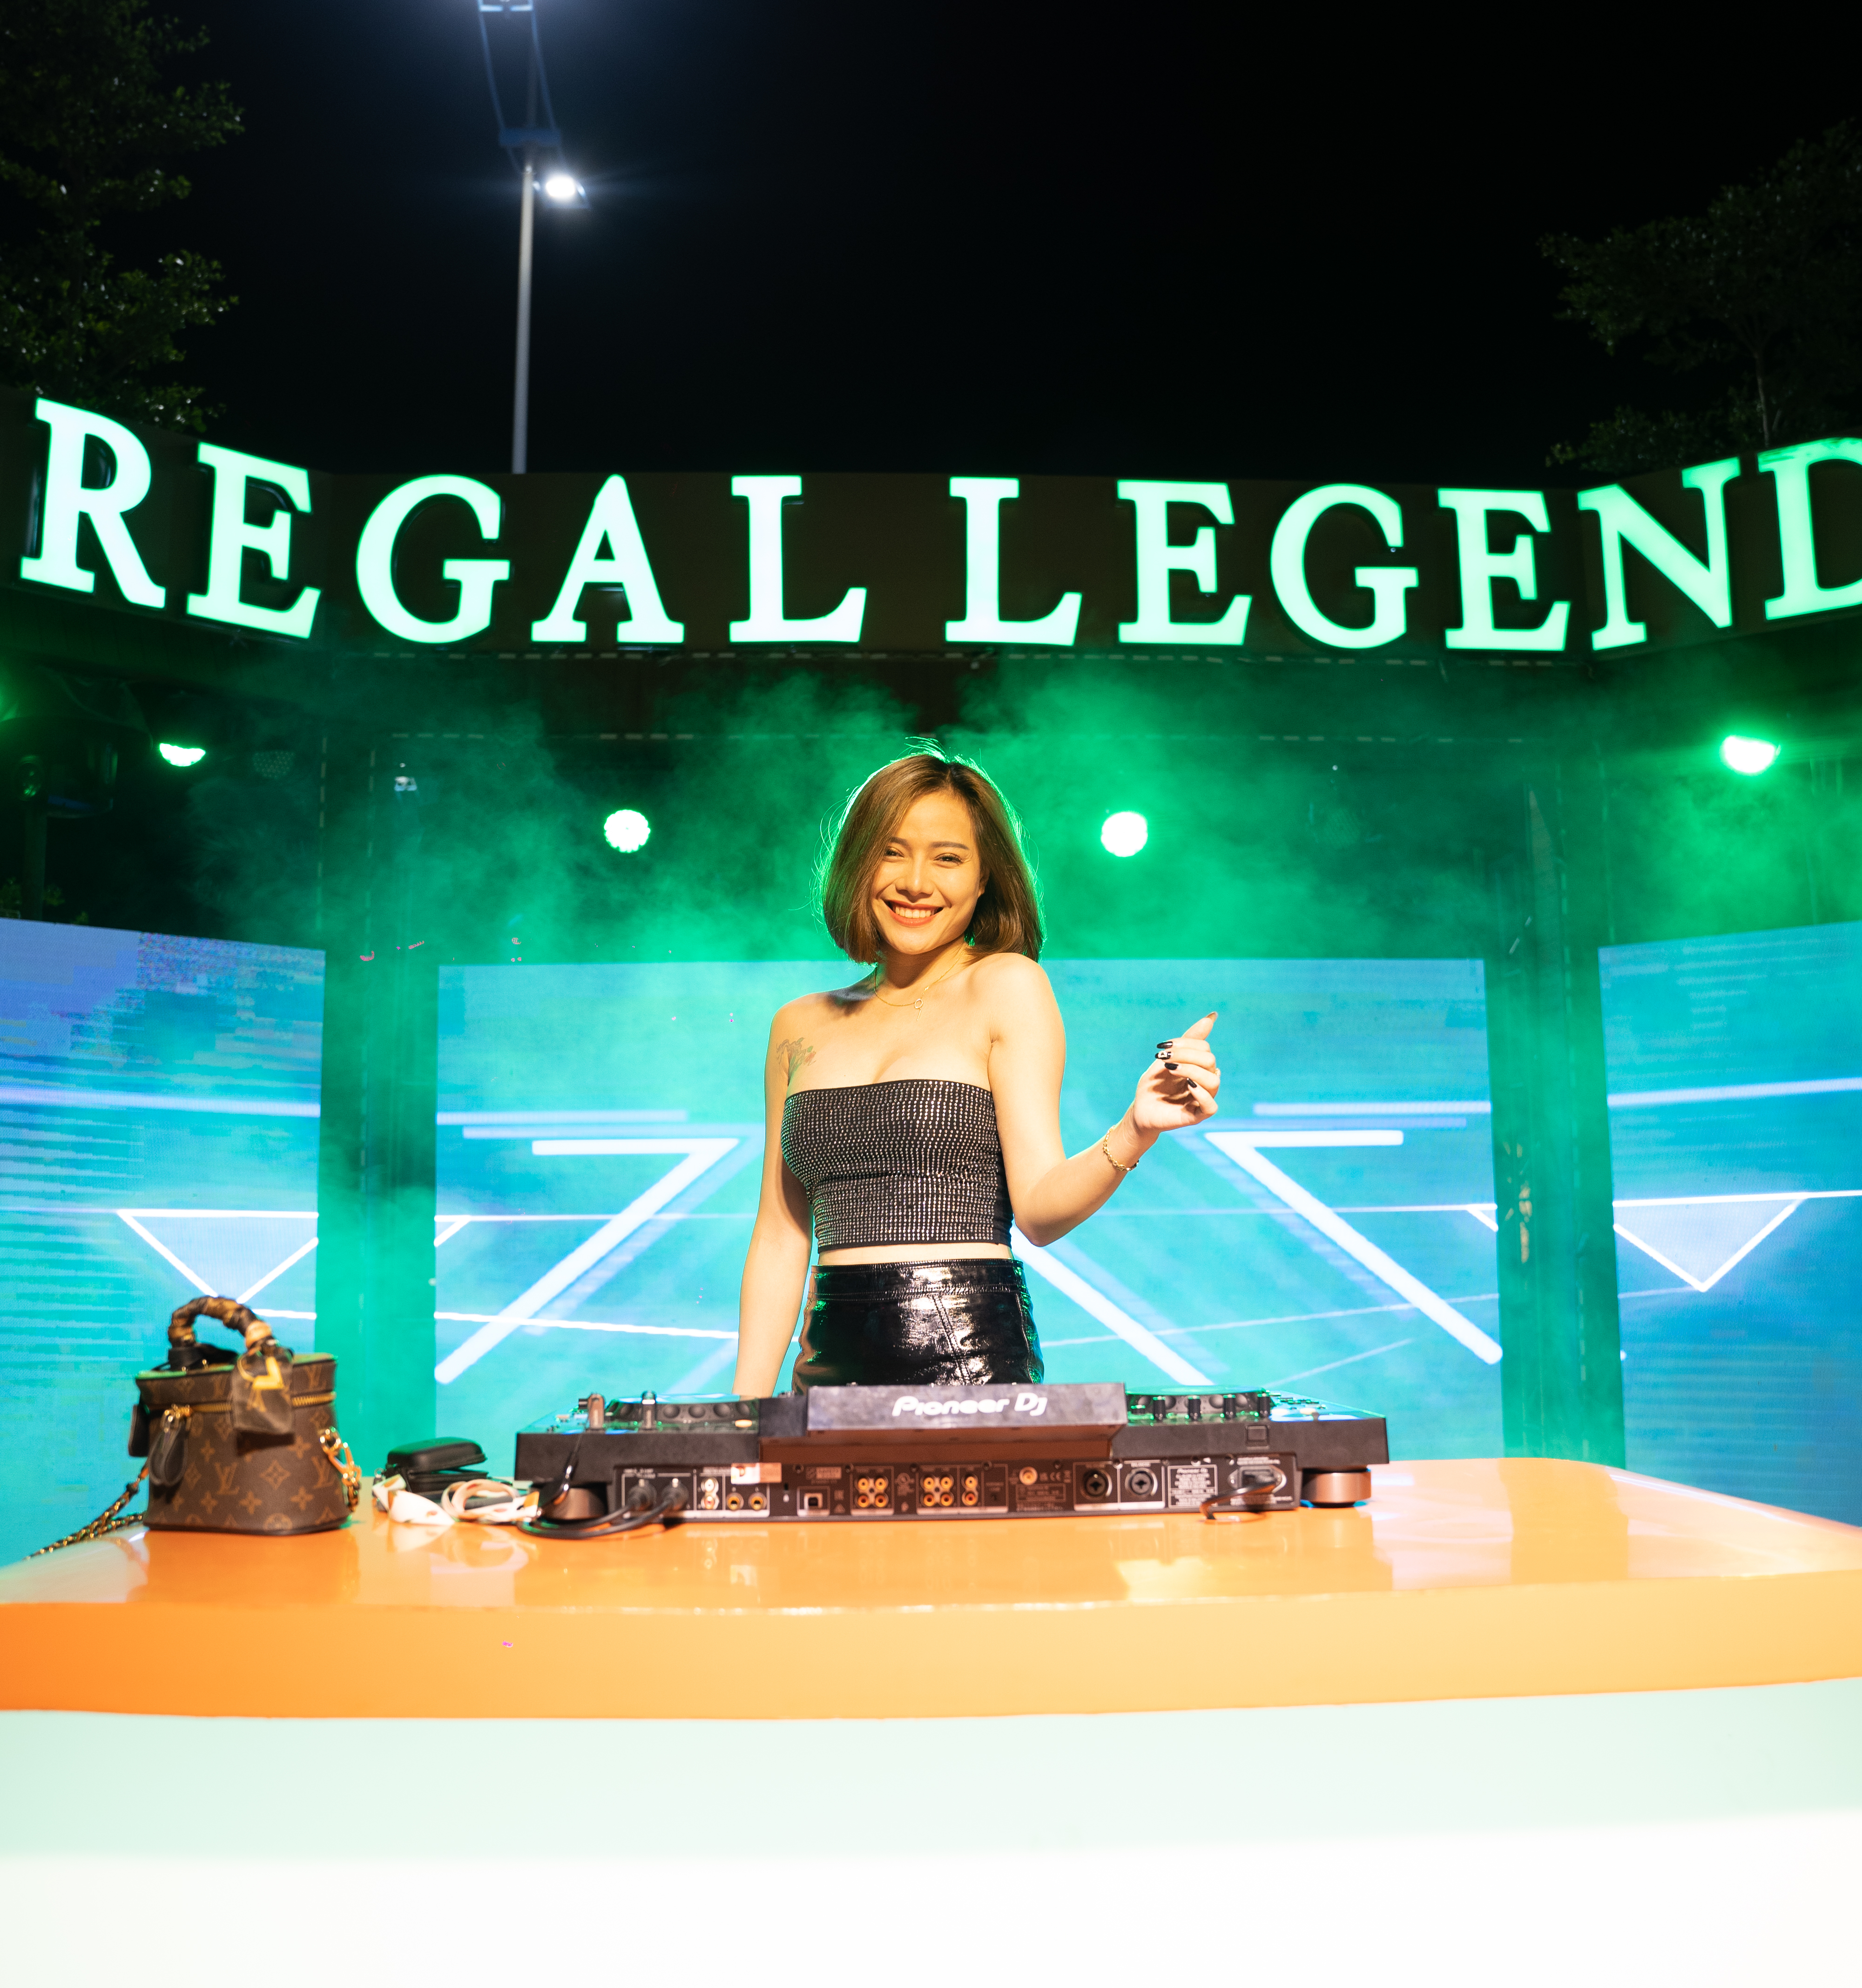 Regal Legend khoác áo mới cho bán đảo Bảo Ninh - Ảnh 1.